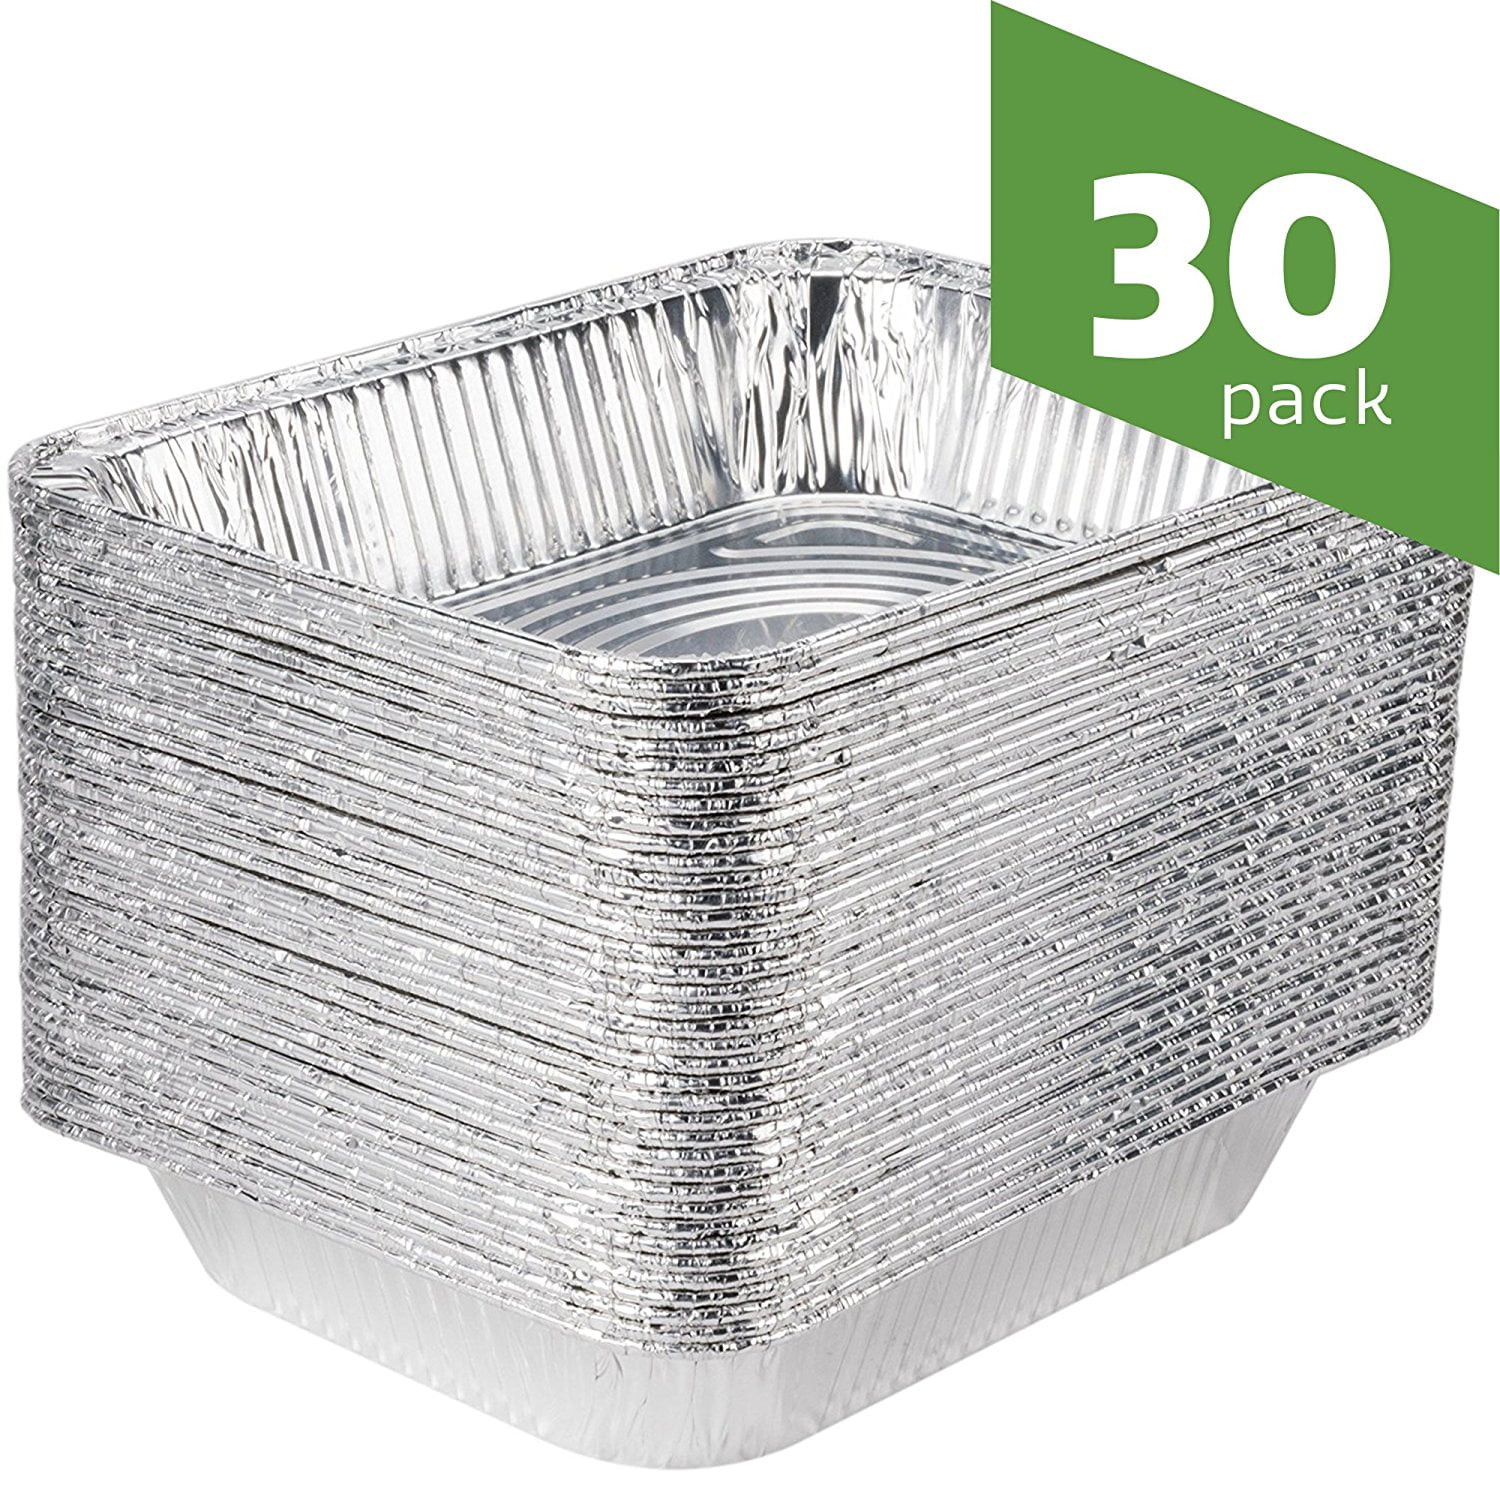 FLHOPE Half Size Deep Steam Table Pans Premium Disposable Baking Pans Aluminum Foil Pans 30 Pack 